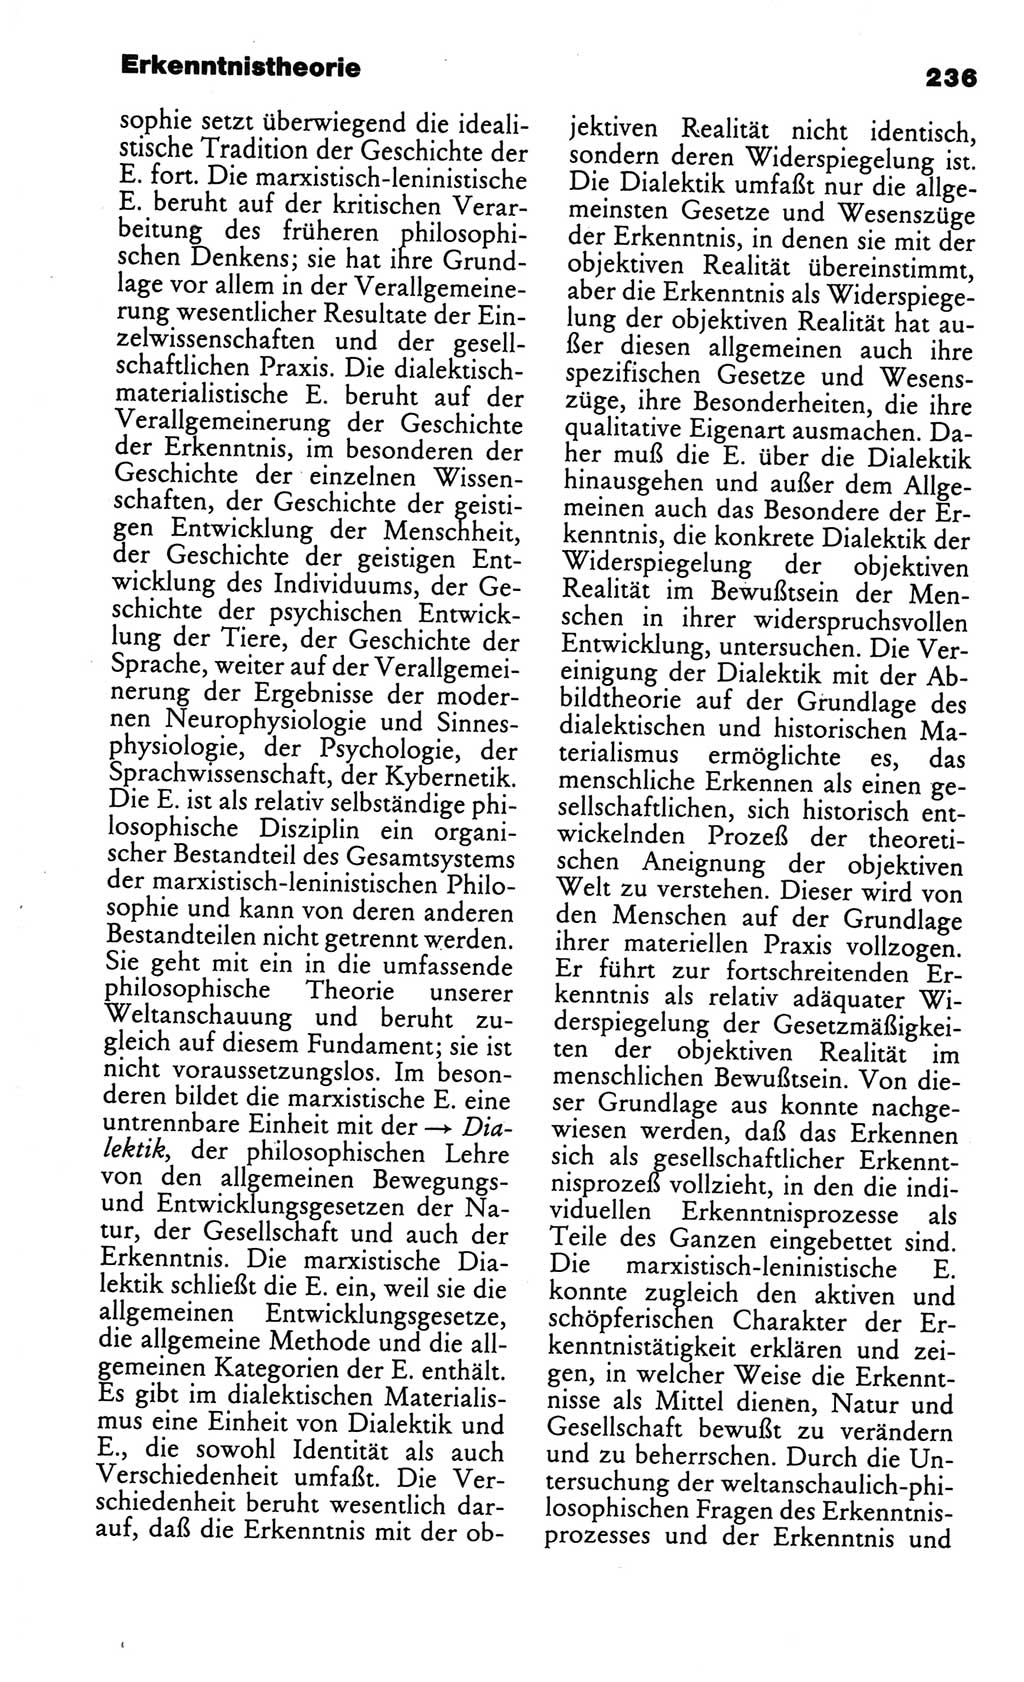 Kleines politisches Wörterbuch [Deutsche Demokratische Republik (DDR)] 1986, Seite 236 (Kl. pol. Wb. DDR 1986, S. 236)